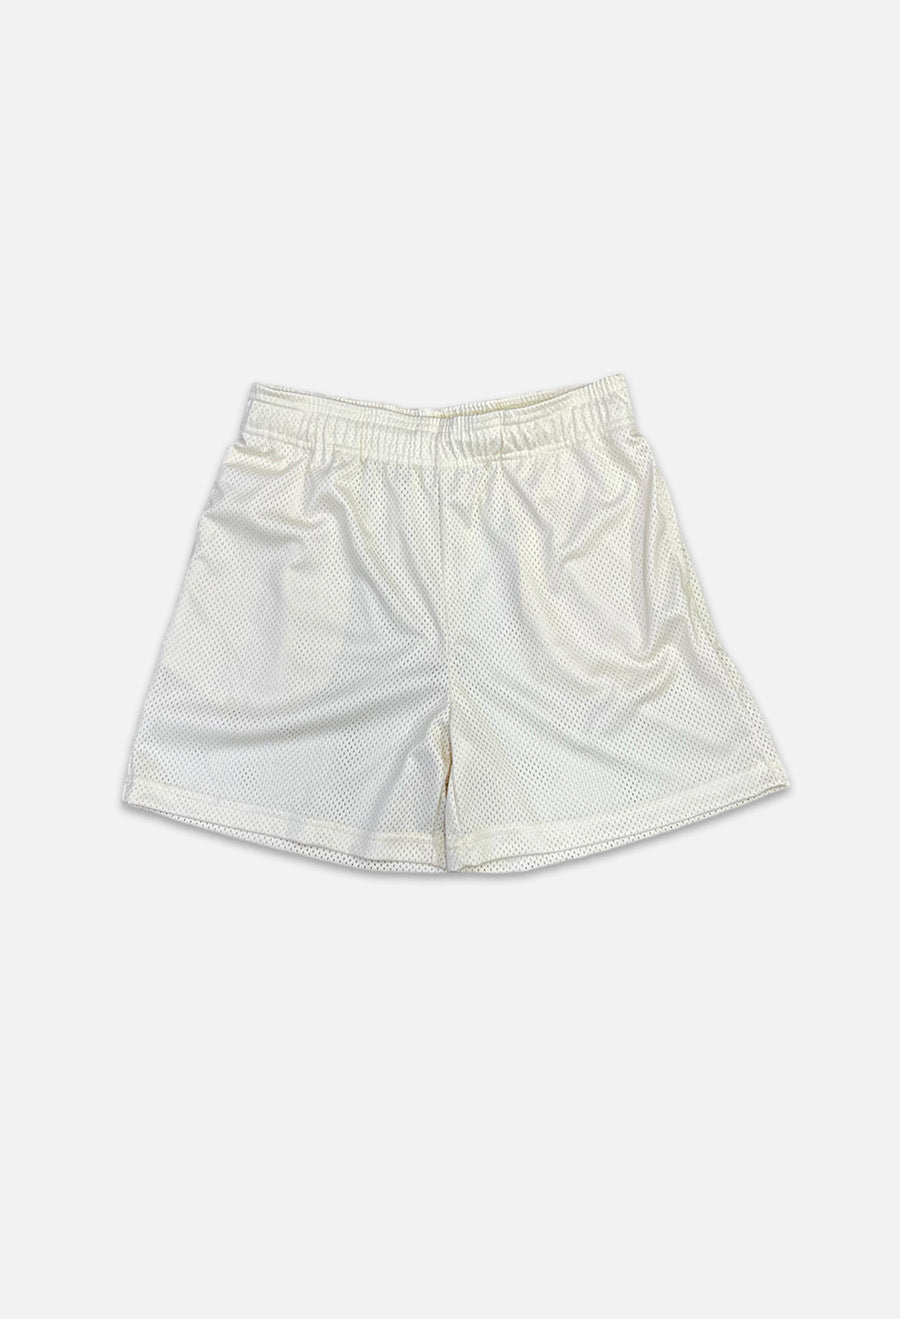 White mesh shorts